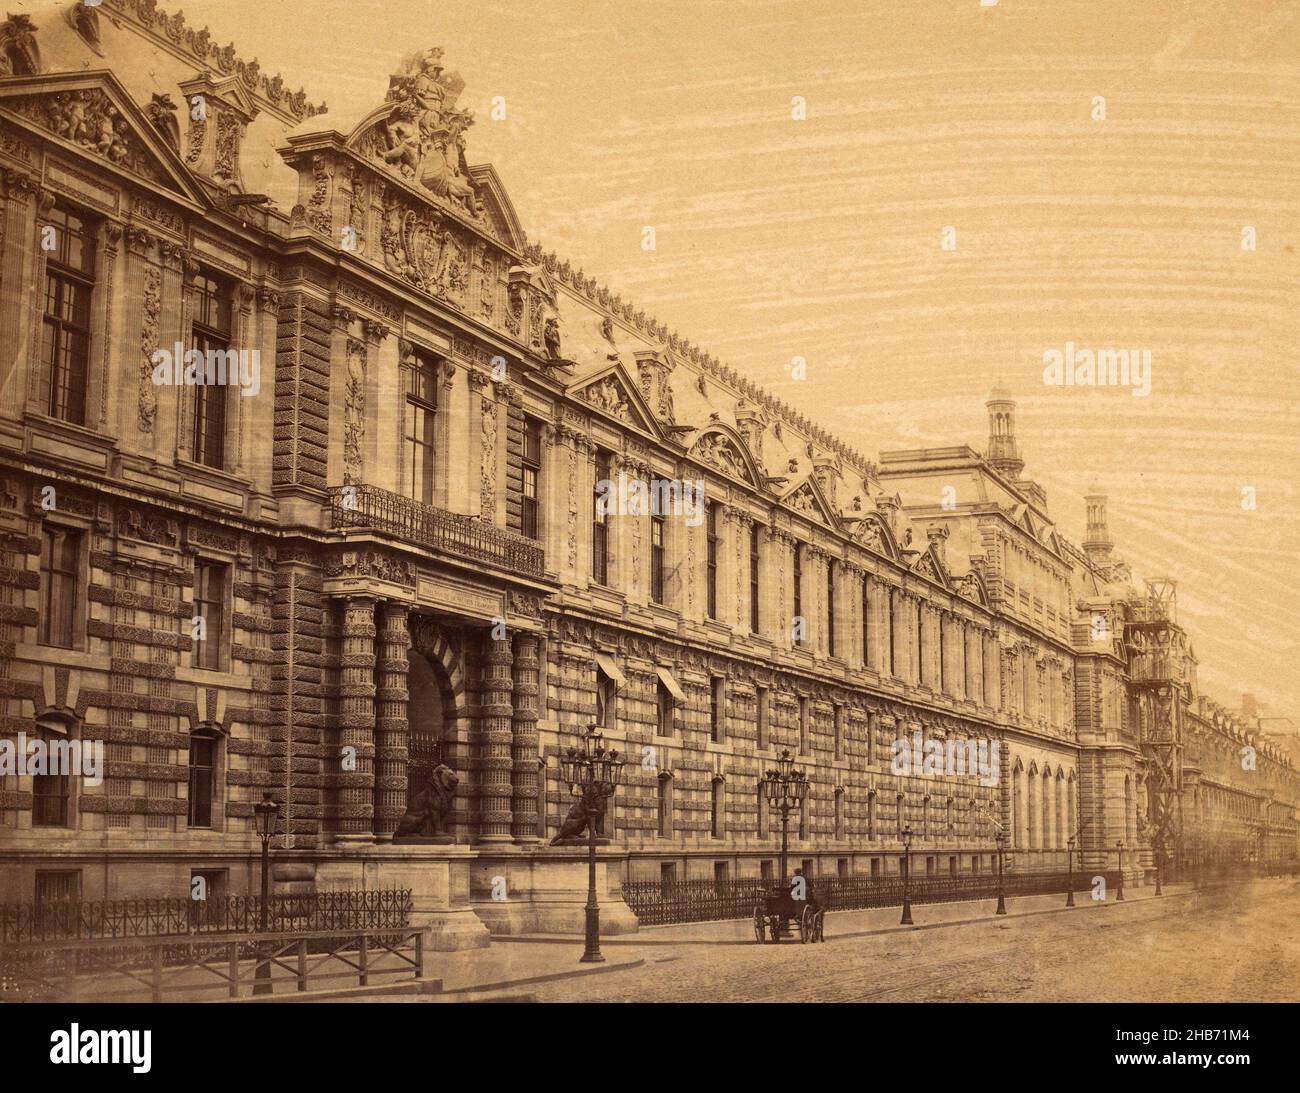 Ansicht eines Flügels des Louvre in Paris, anonym, Paris, 1850 - 1900, Karton, Albumin-Print, Höhe 249 mm × Breite 323 mm Stockfoto